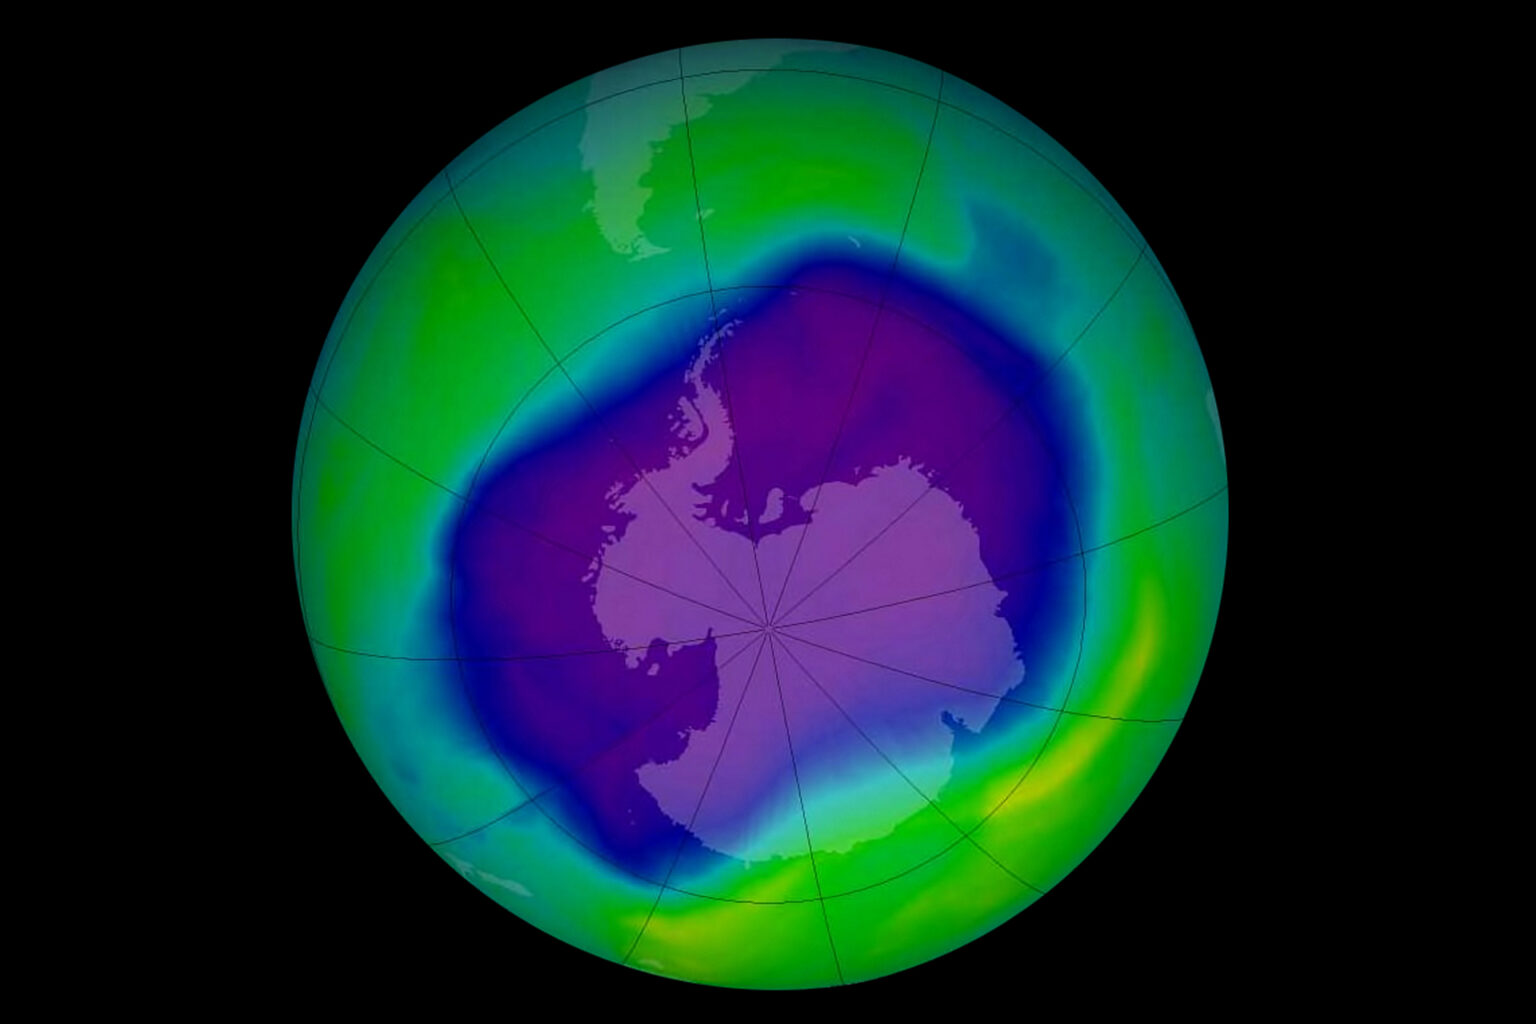 Разрушение озонового слоя фото для презентации